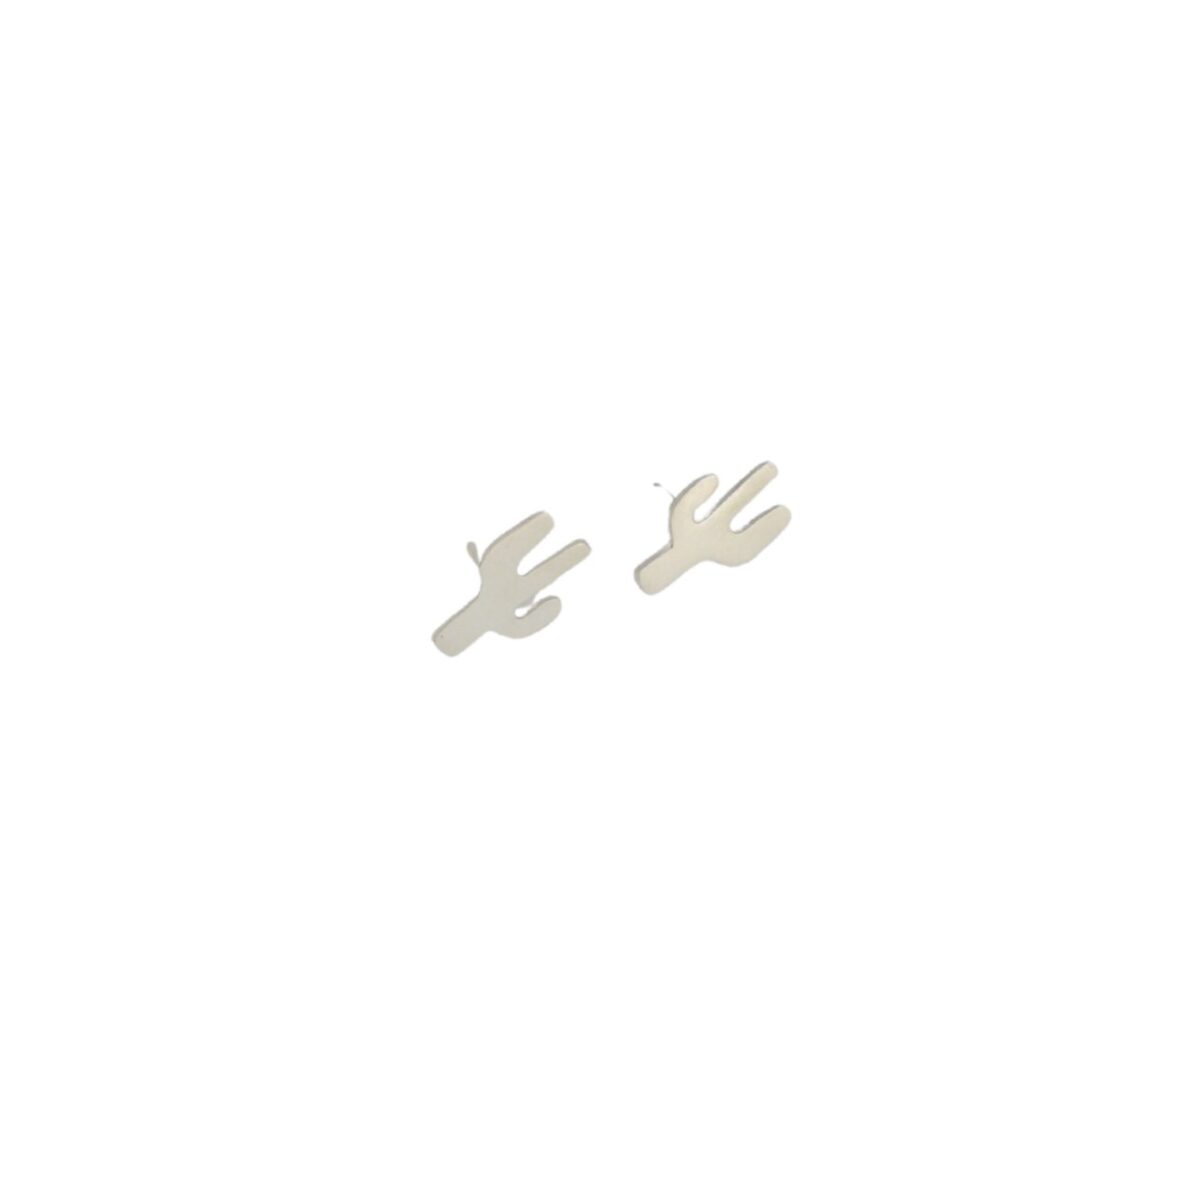 “Κάκτος” καρφωτά σκουλαρίκια ασημένια “Κάκτος” καρφωτά σκουλαρίκια ασημένια “Κάκτος” καρφωτά σκουλαρίκια ασημένια 4